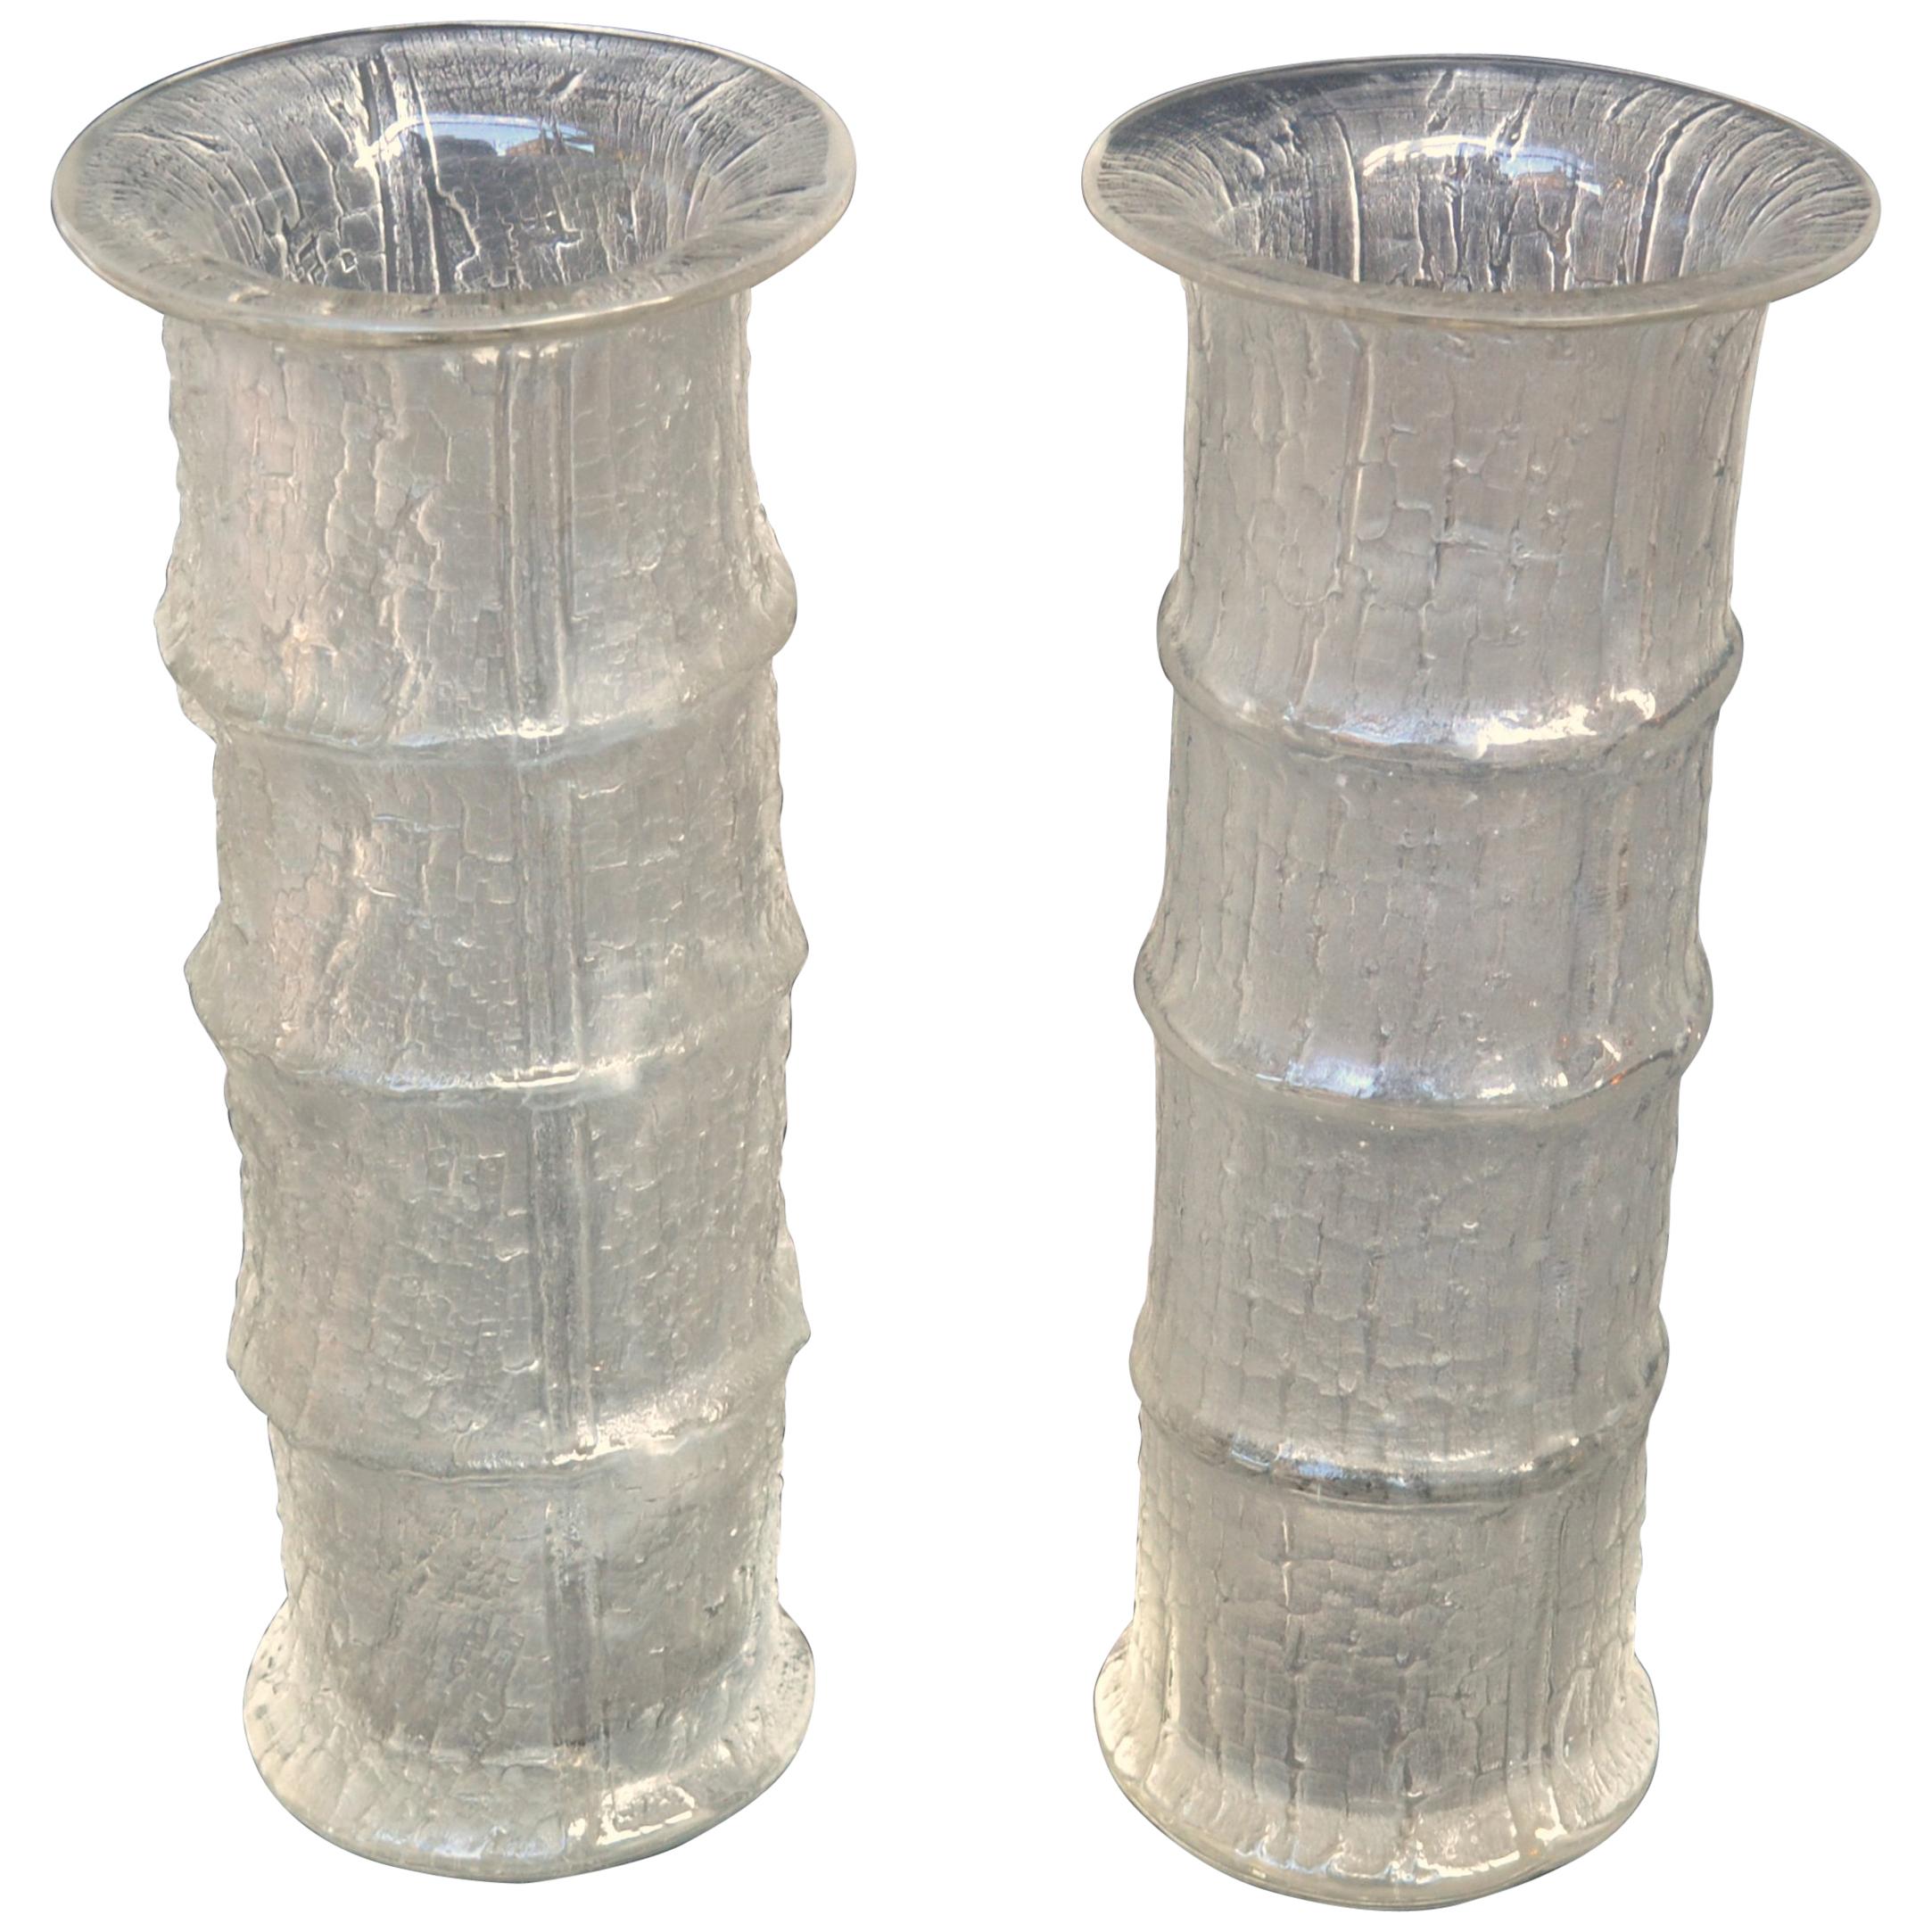 Une paire de vases en verre soufflé à la bouche, conçus en 1964 par Timo Sarpaneva (1926-2006) pour Iittala, Finlande. Le verre texturé à l'extérieur avec un motif de bambou est obtenu par une technique de soufflage au moule créant un contraste de